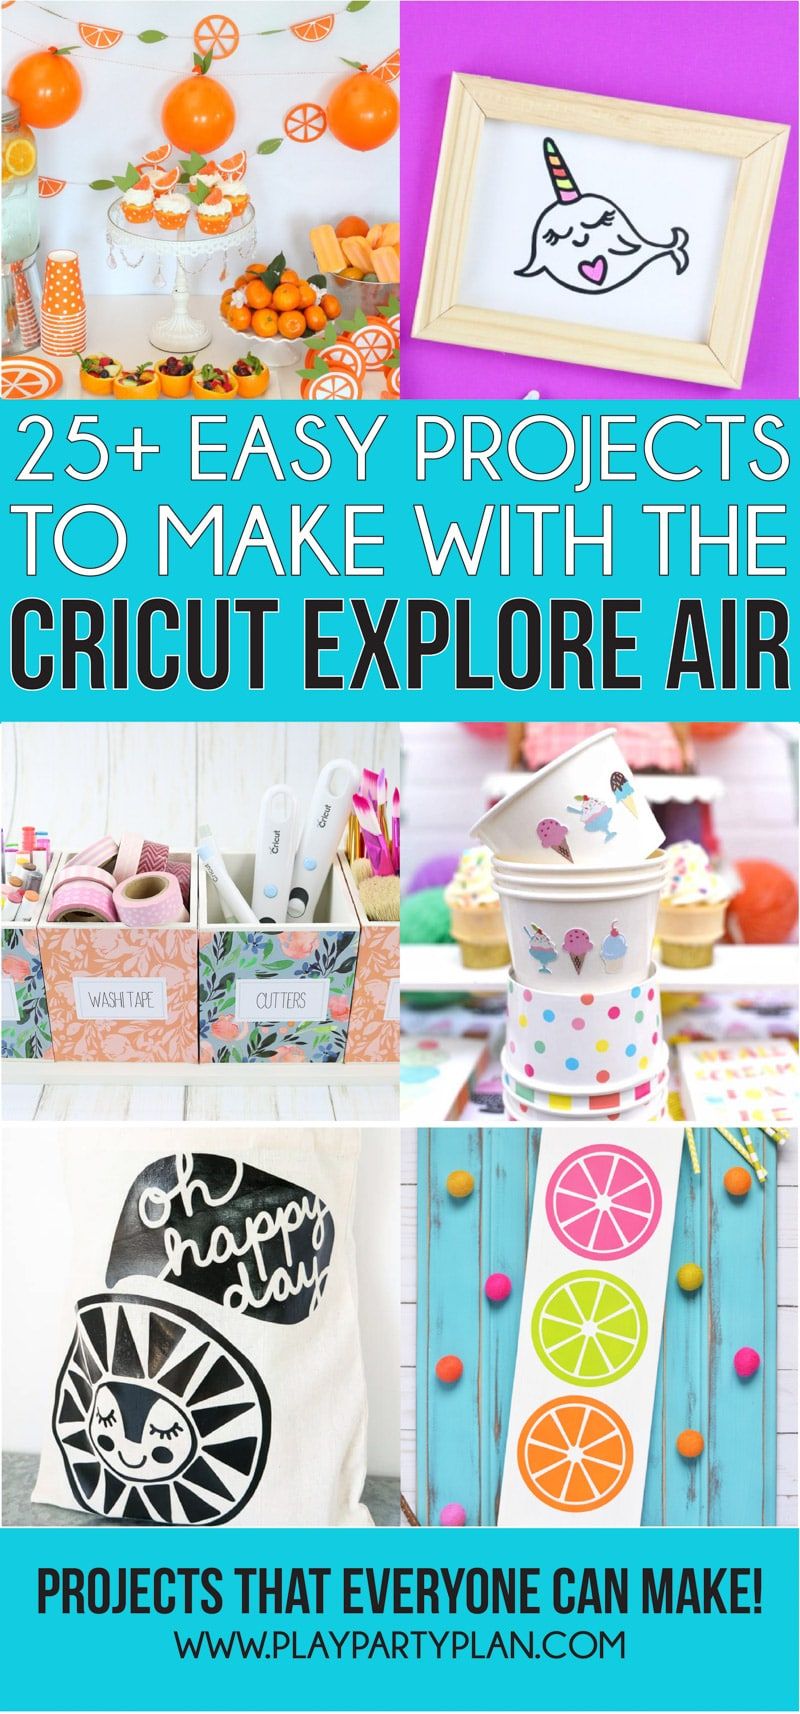 Talloze Cricut-projecten voor beginners die je kunt maken met een Cricut Explore Air of Cricut Maker! Of je ze nu maakt om te verkopen of gewoon dingen voor jezelf wilt maken - deze lijst met ideeën heeft voor elk wat wils!